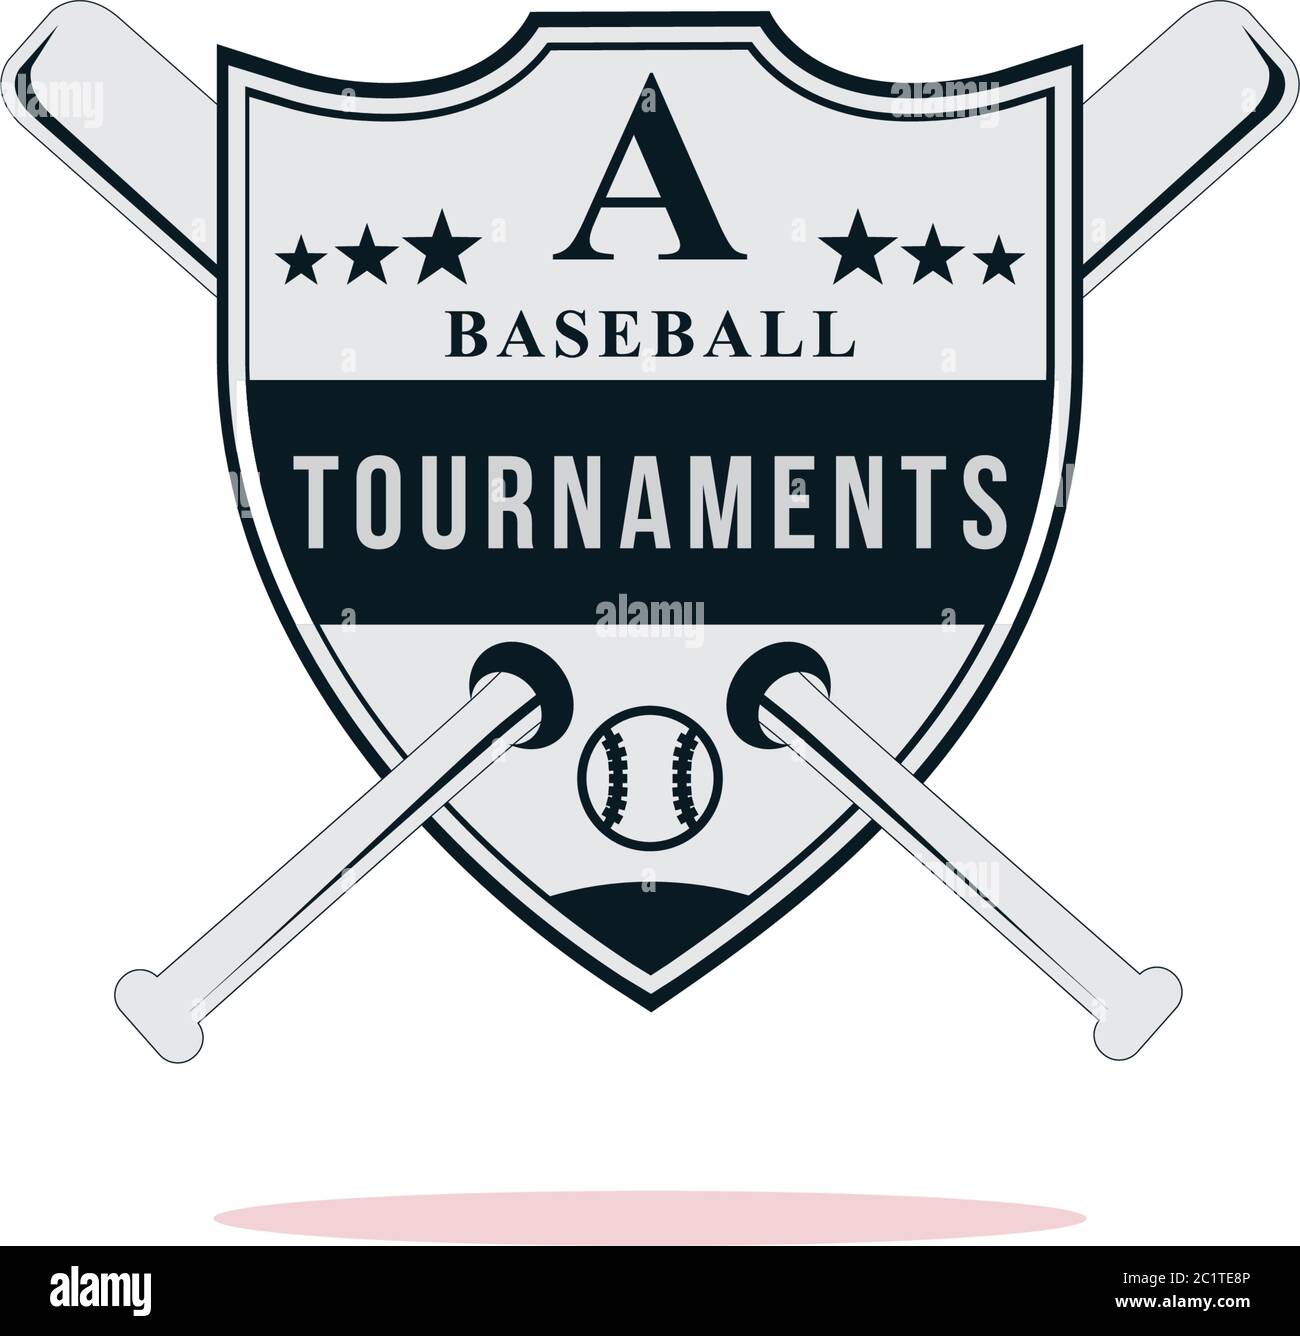 Trofeos del campeón de béisbol, trofeo deportivo de béisbol, premios de  béisbol personalizados Prime